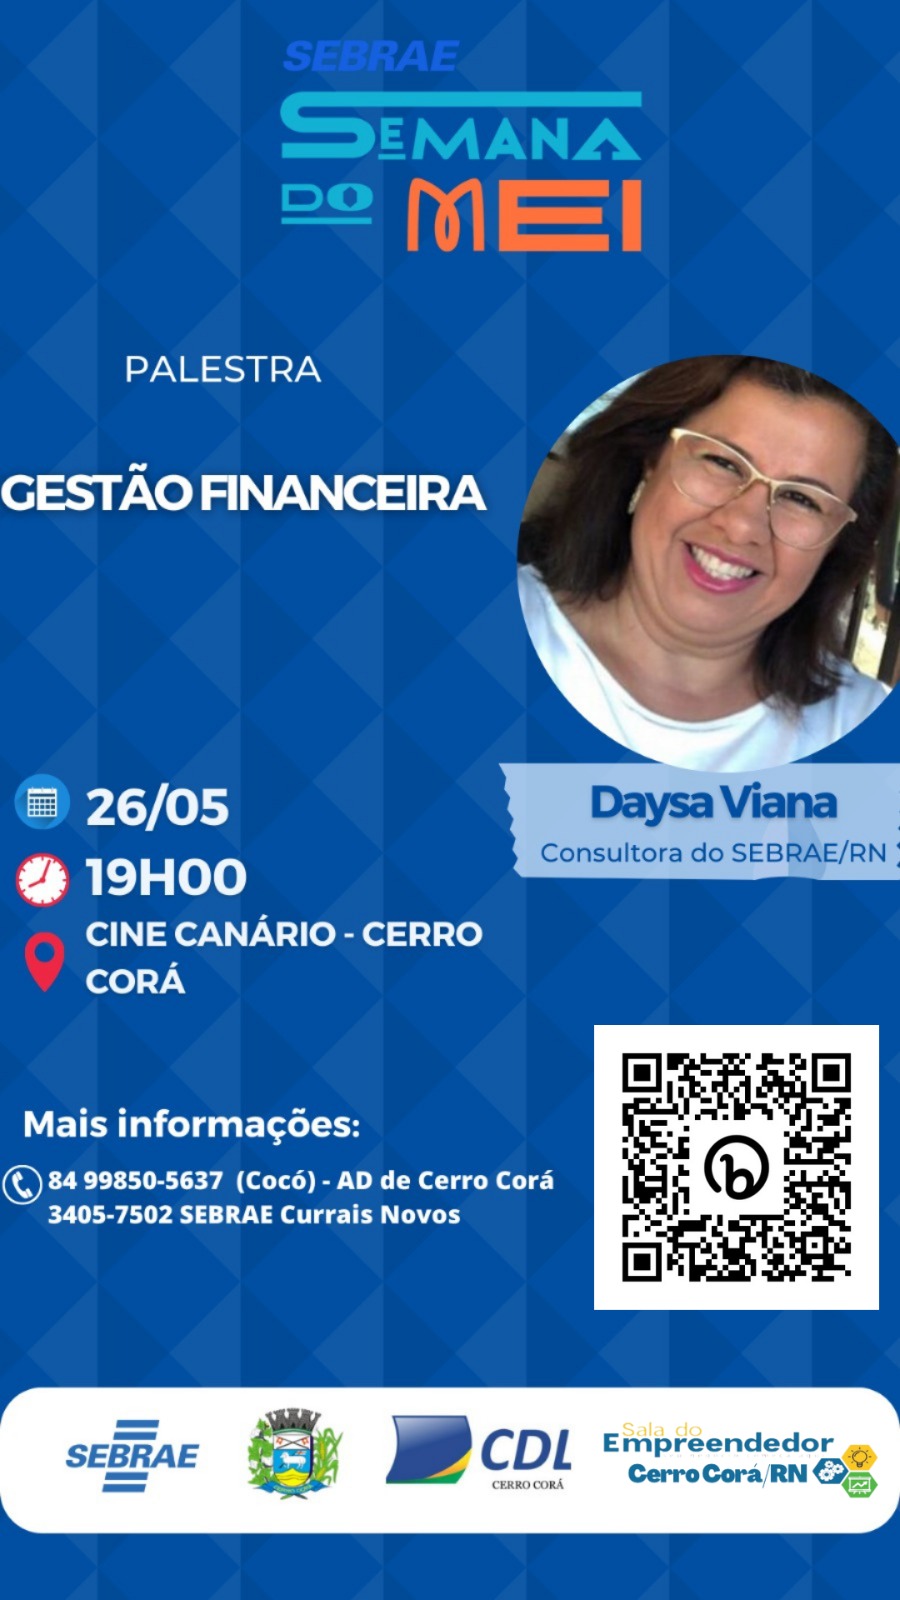 Cerro Corá: Palestra sobre Gestão Financeira com a consultora do SEBRAE, Dayse Viana.